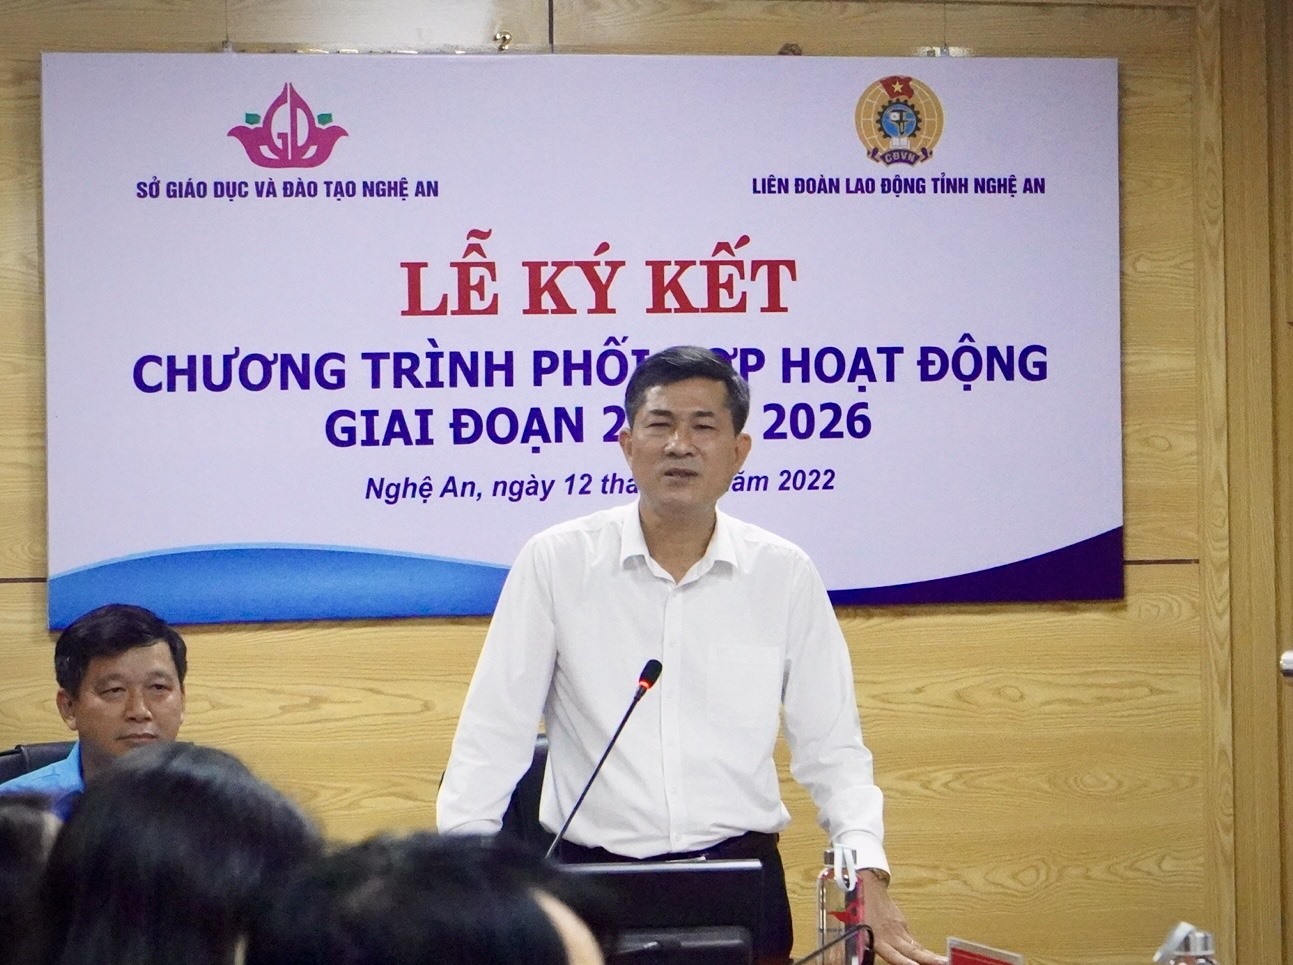 Ông Thái Văn Thành - Giám đốc Sở Giáo dục và Đào tạo Nghệ An phát biểu tại buổi lễ. Ảnh: Quỳnh Trang